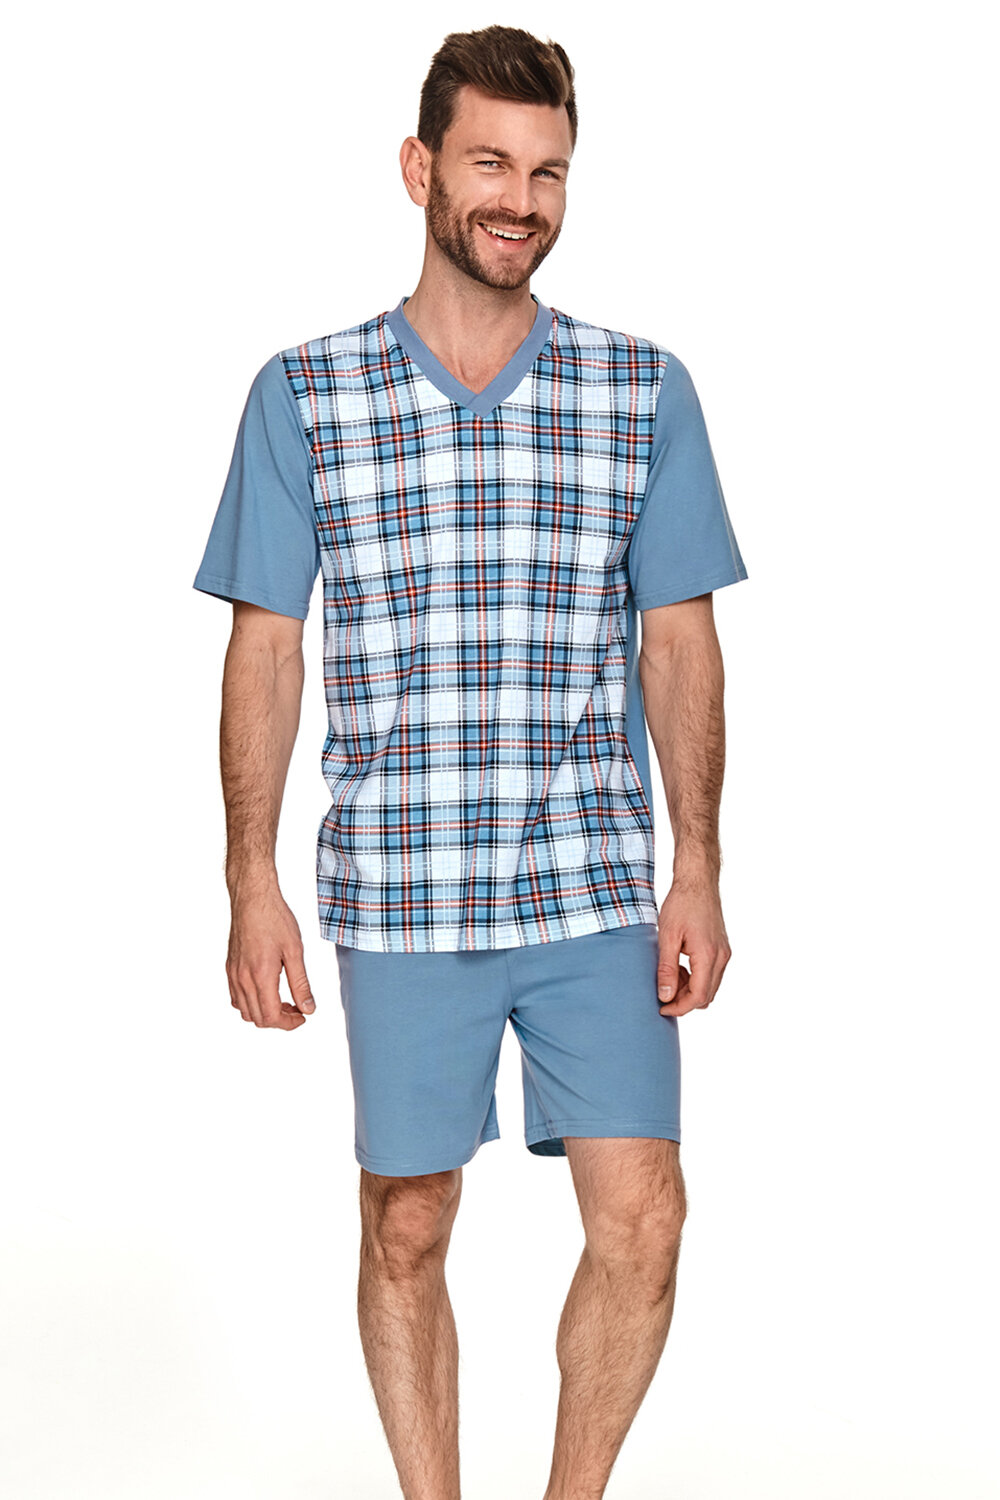 Пижама мужская TARO Anton 2733-2734-2735-02, футболка и шорты, голубой, хлопок 100% (Размер: XXL)